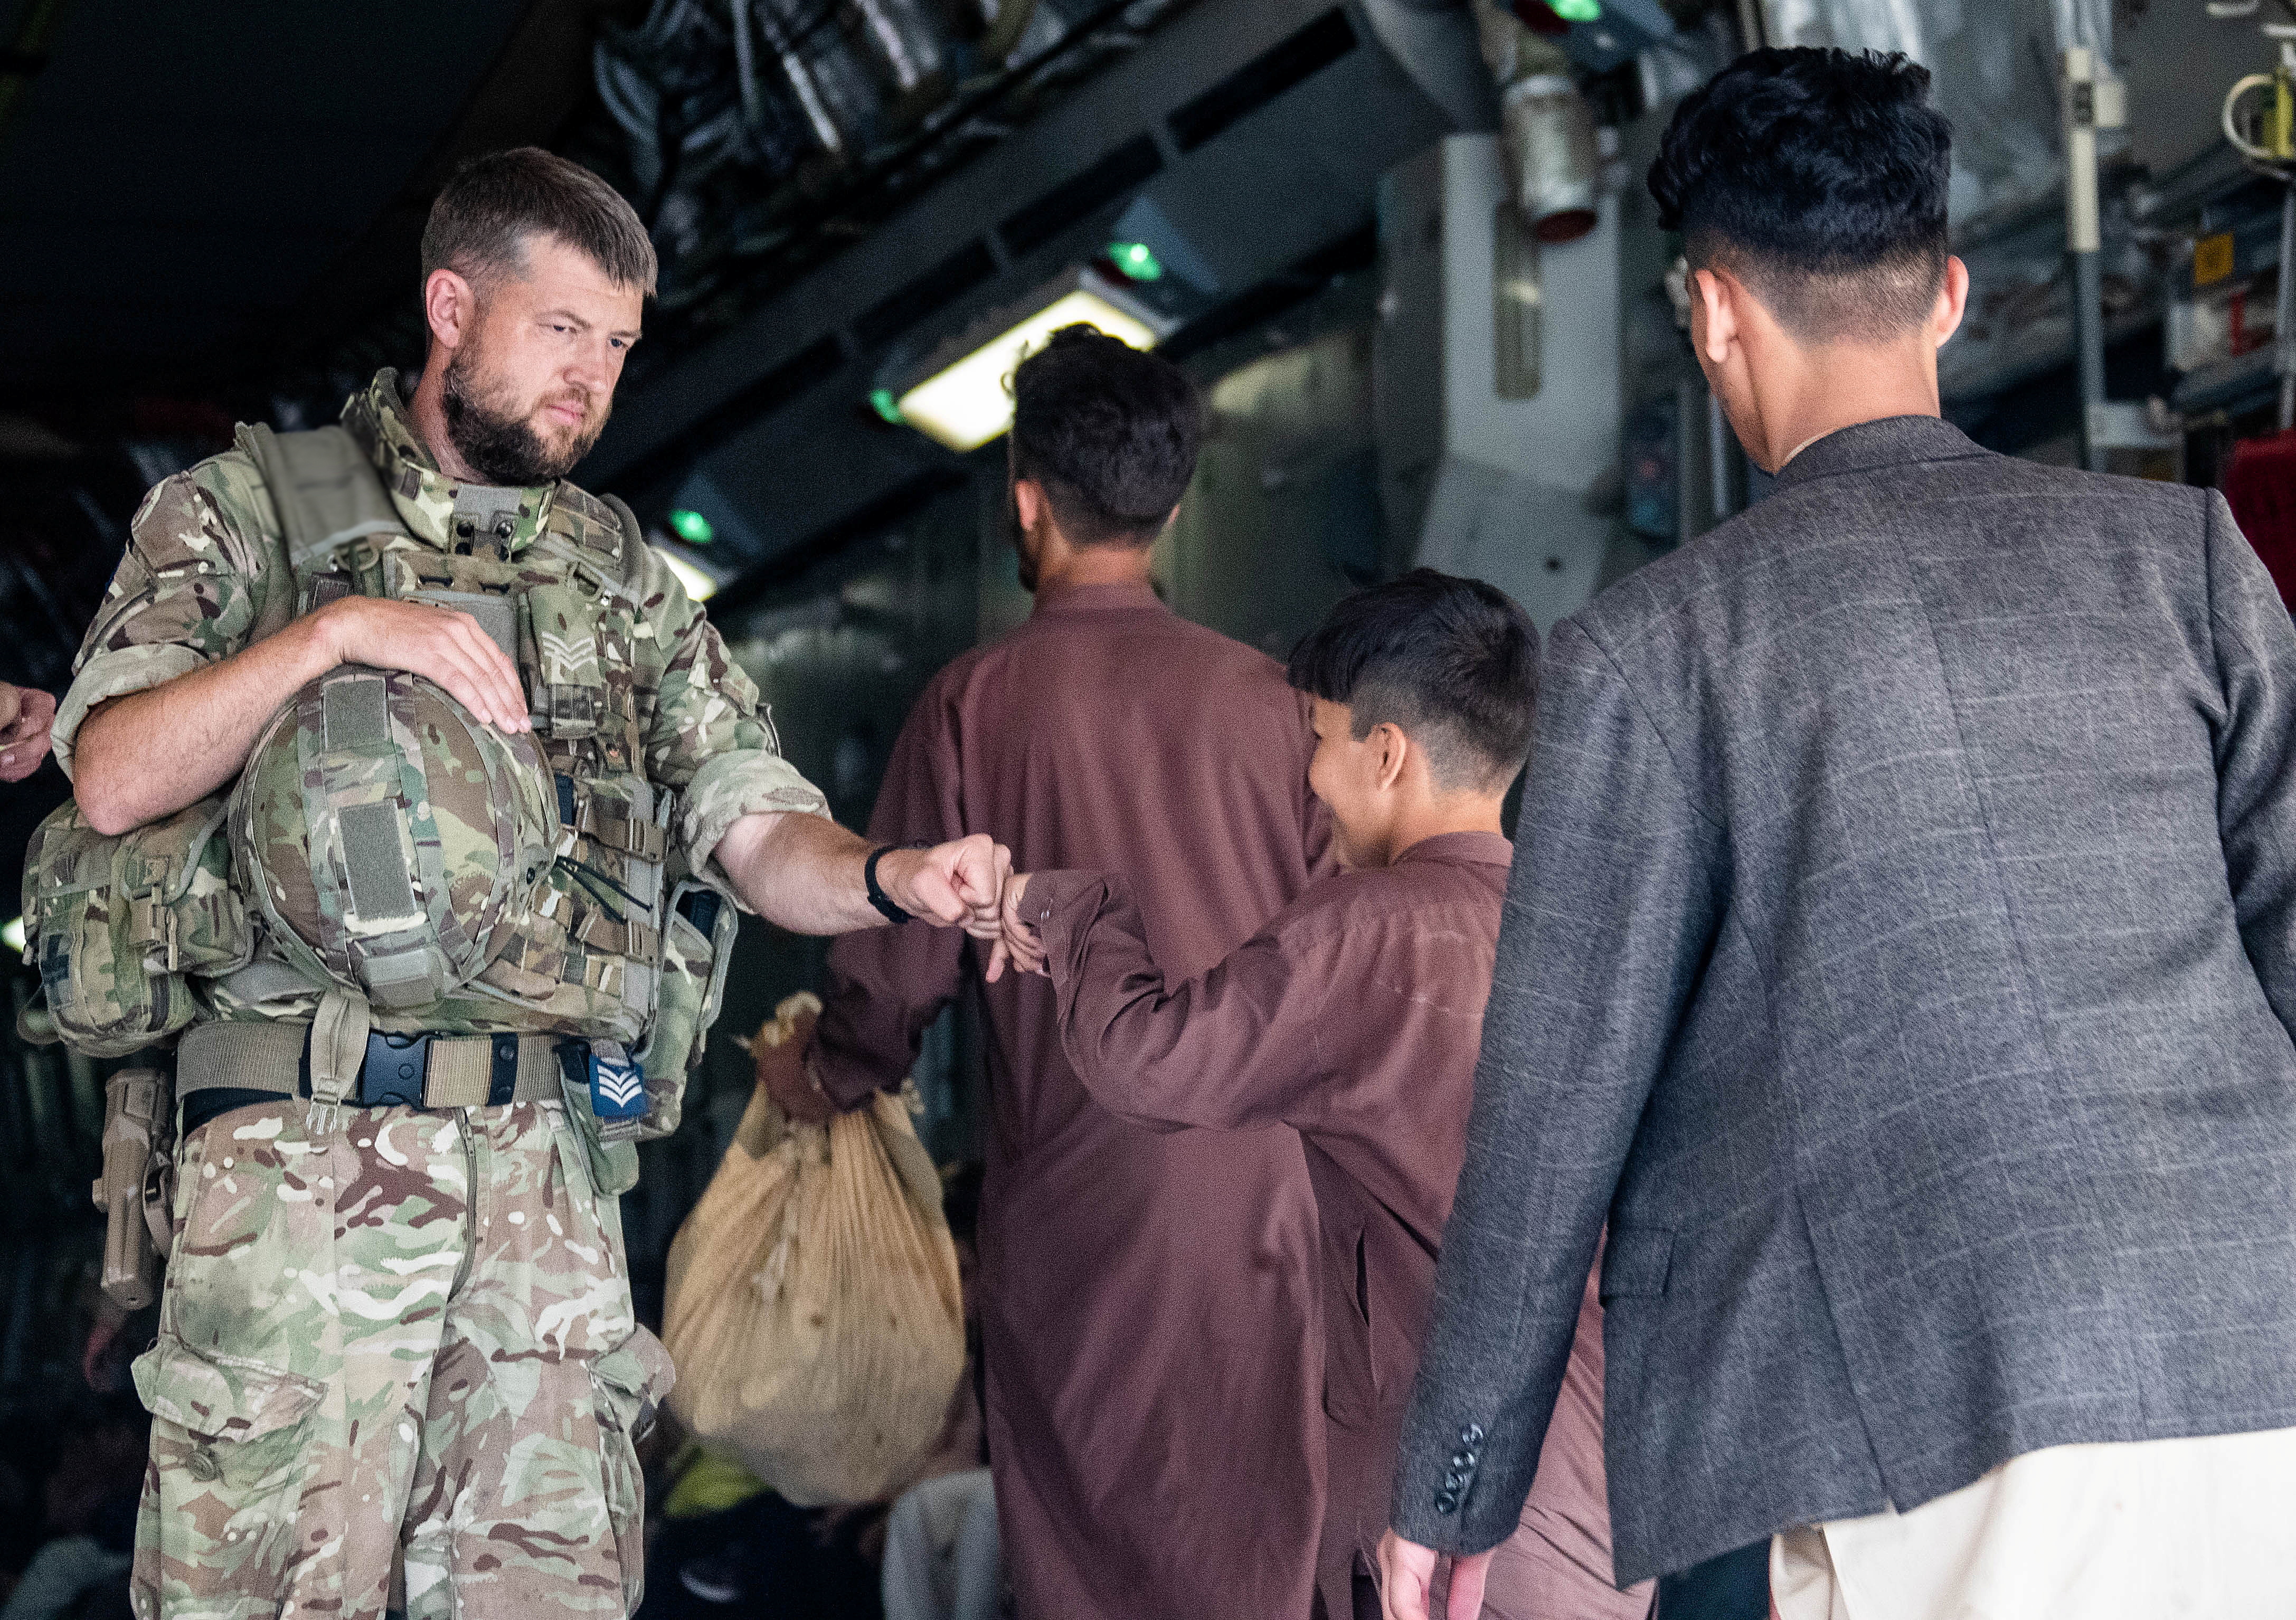 Un miembro de las Fuerzas Armadas del Reino Unido choca los puños con un niño mientras durante la evacuación en el aeropuerto de Kabul, Afganistán, en esta imagen de archivo obtenida por Reuters el 23 de agosto de 2021. LPhot Ben Shread/UK MOD Crown copyright 2021/Handout via REUTERS